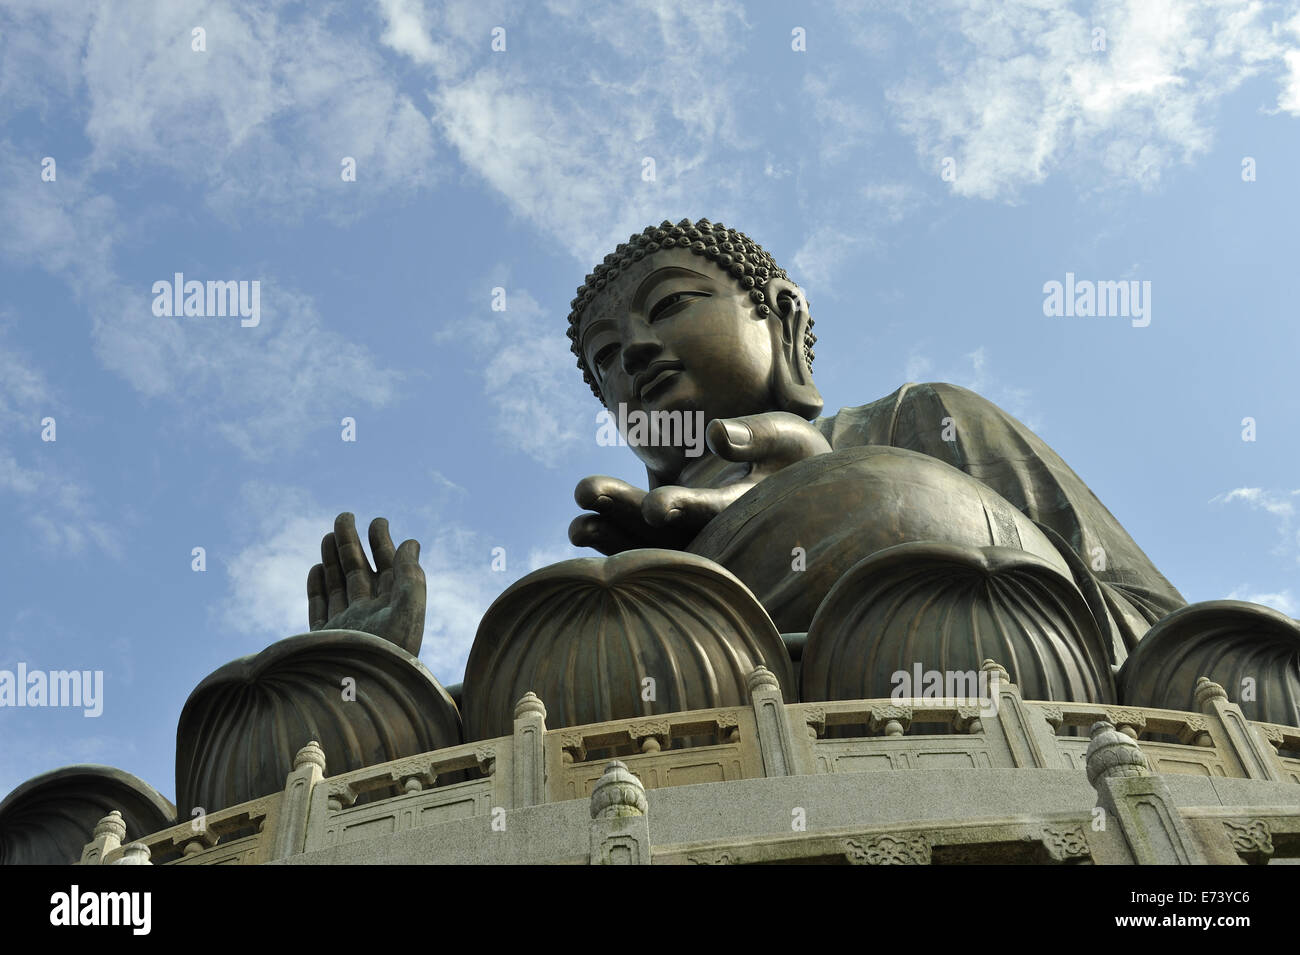 Le Tian Tan Buddha (Big Buddha) statue, Ngong Ping, Lantau Island, Hong Kong, Chine Banque D'Images